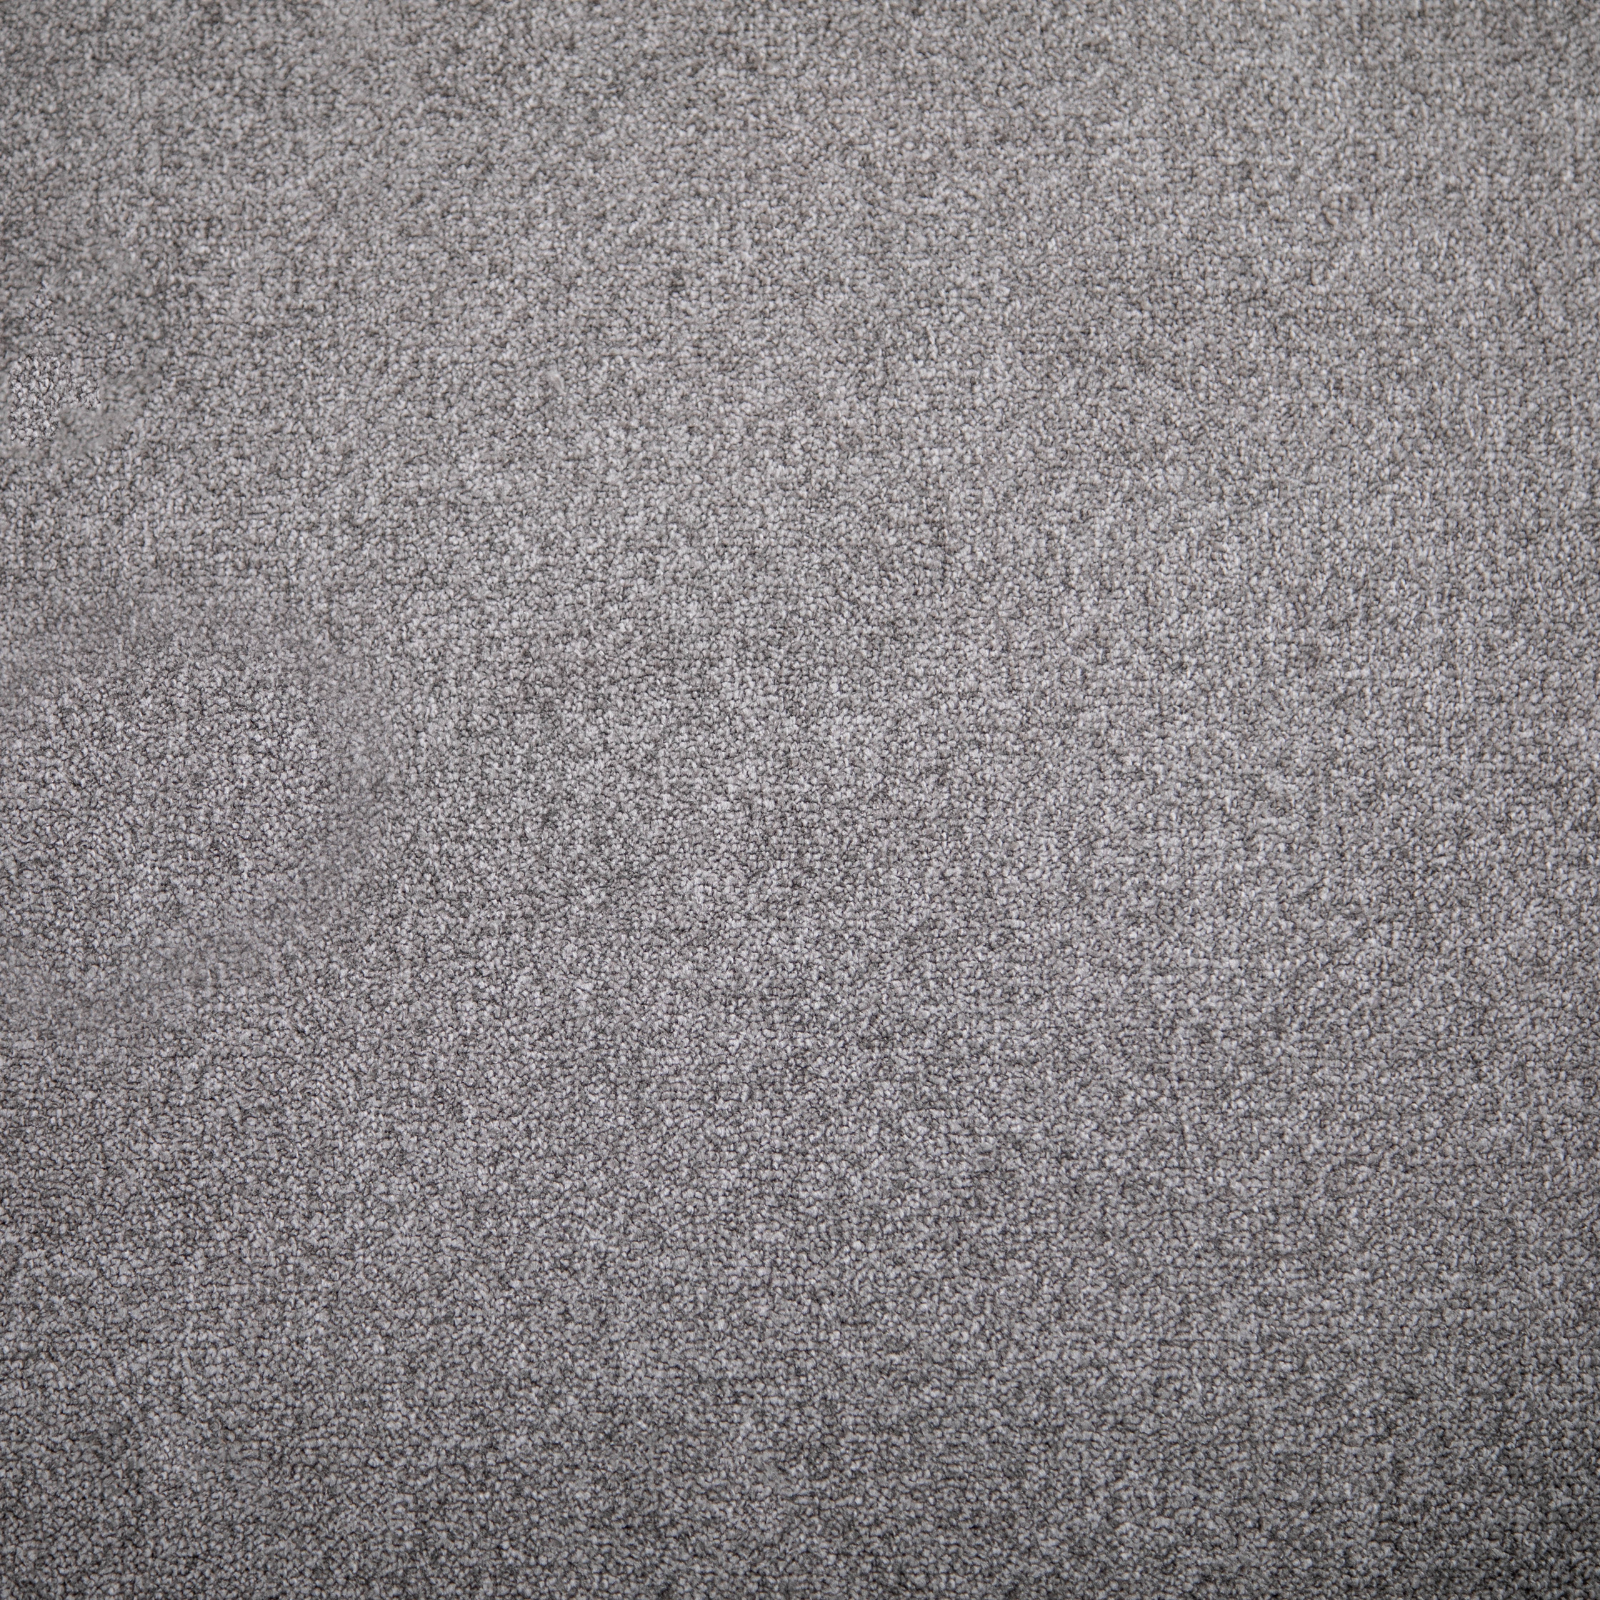 Silver Grey Saxony Carpet